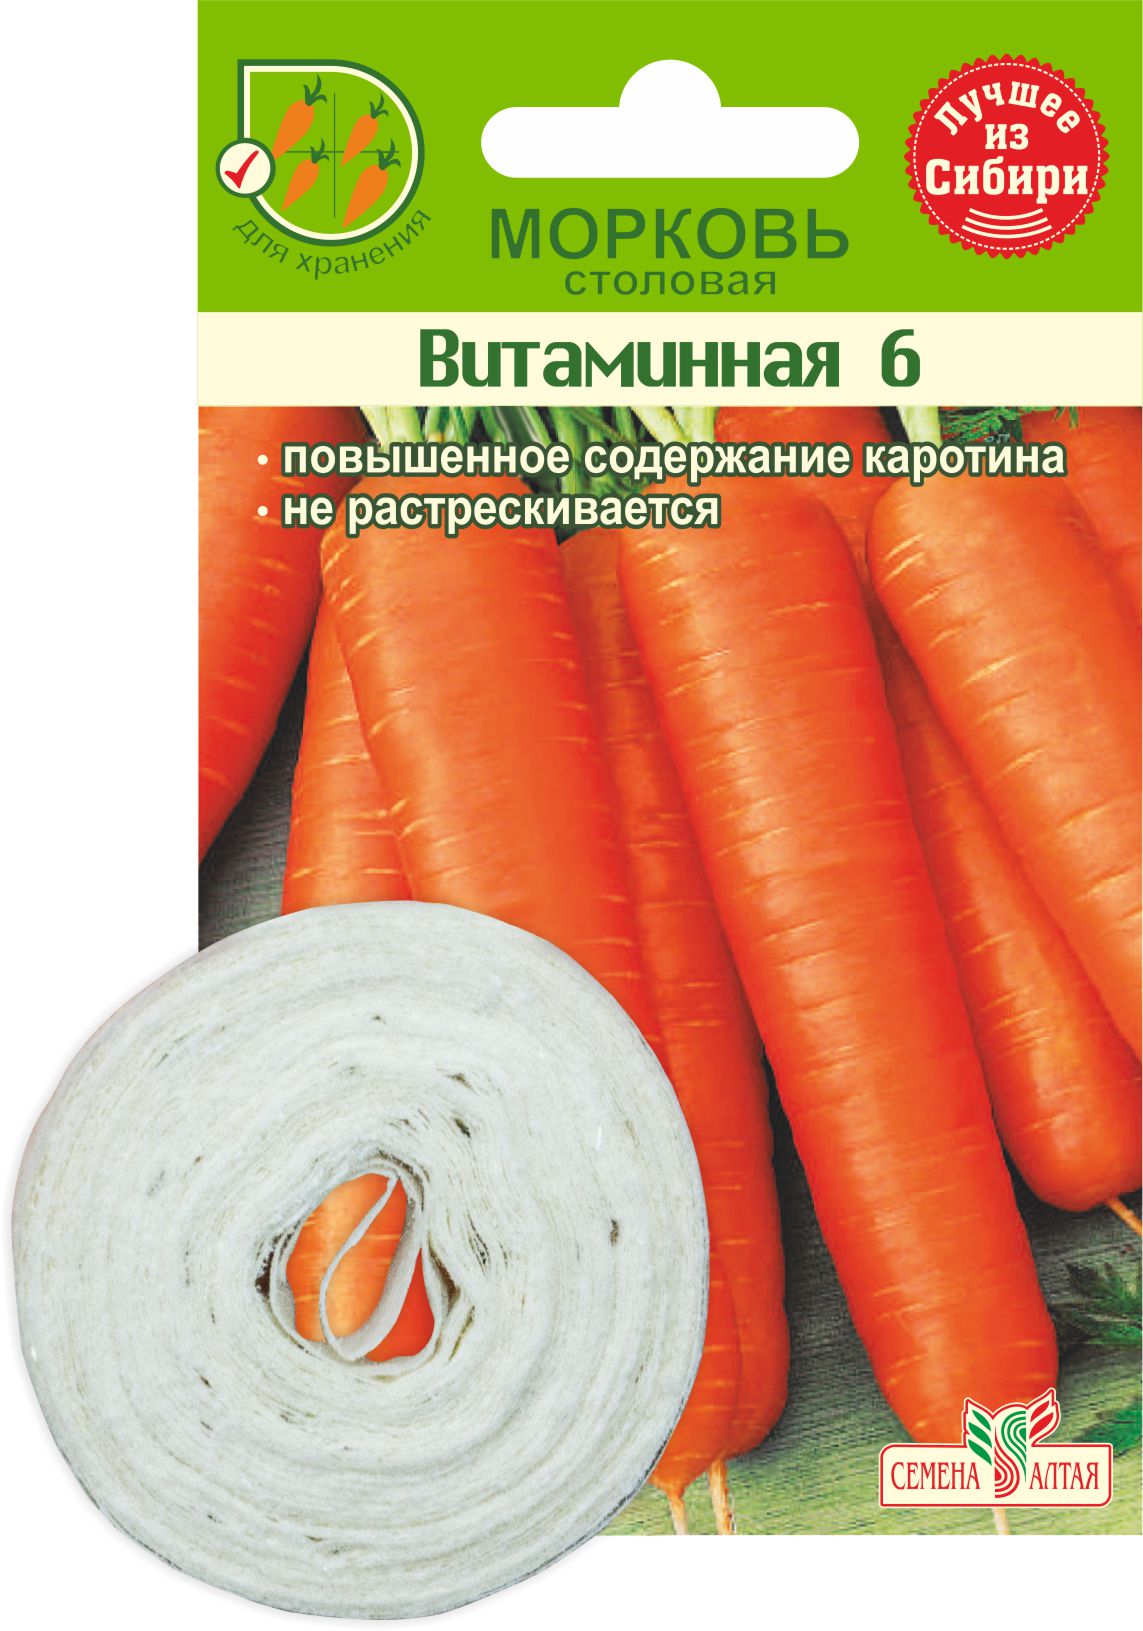 Морковь На Ленте Витаминная Семена Алтая